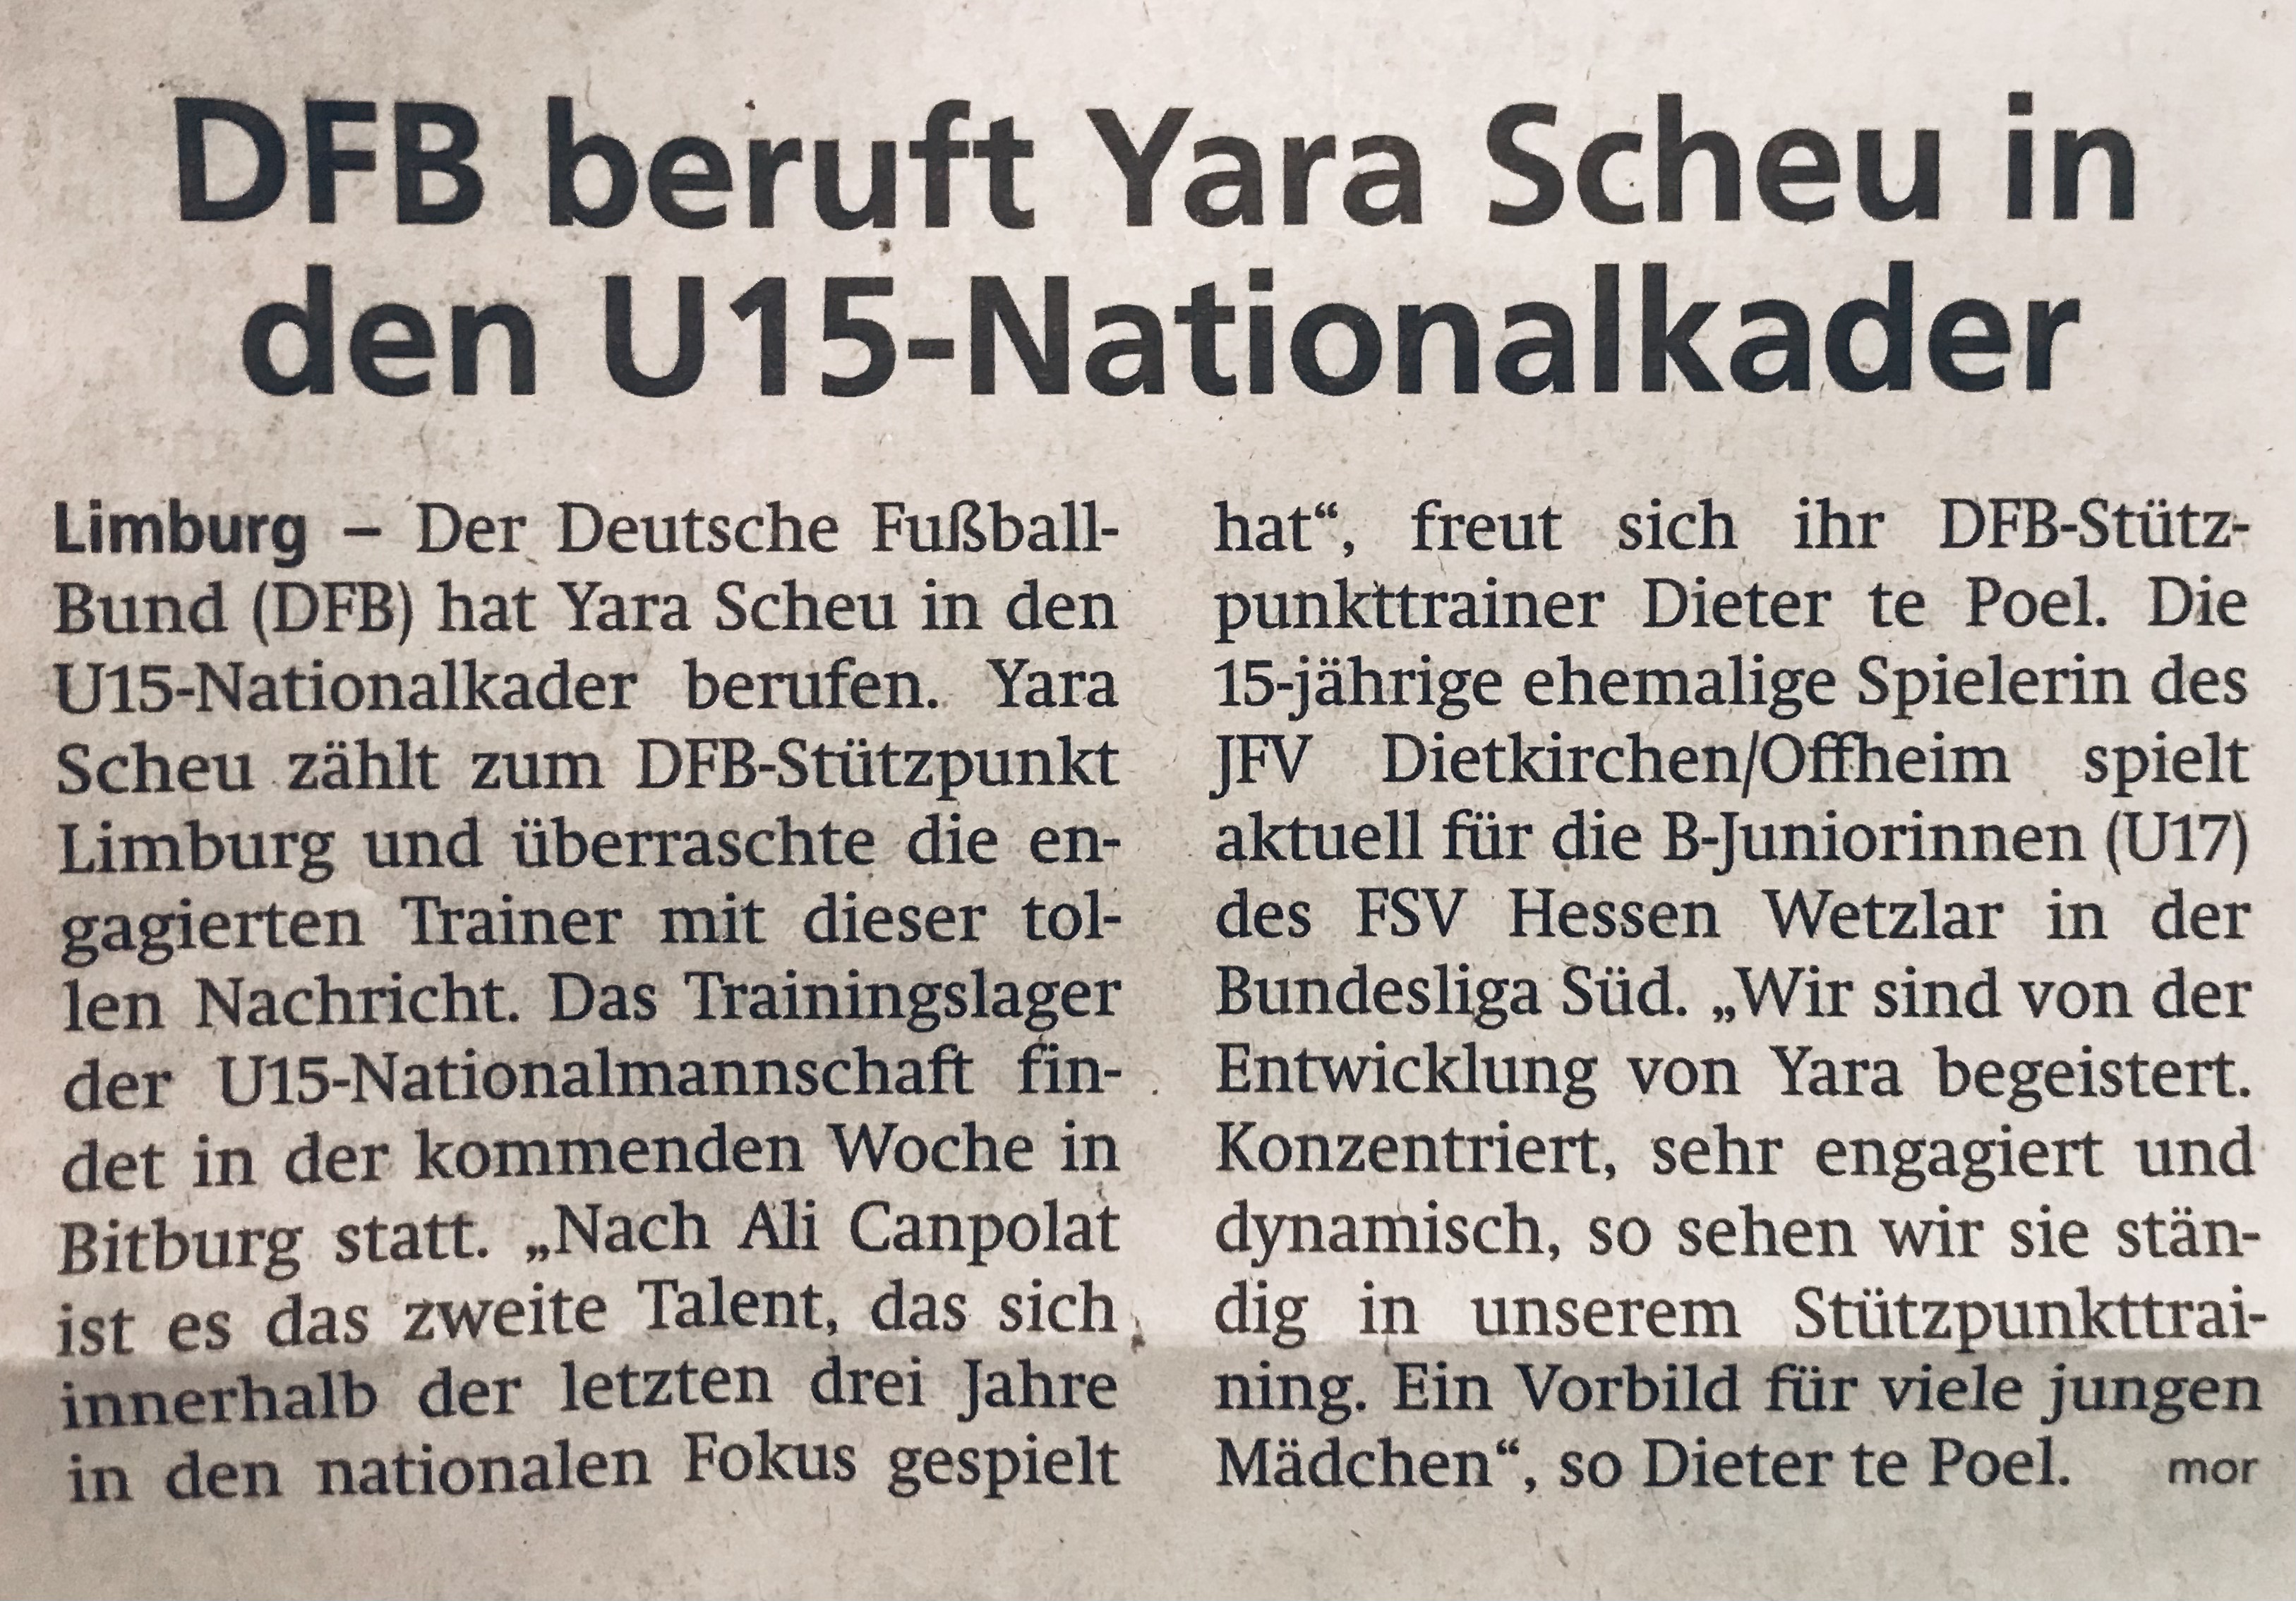 DFB beruft Yara Scheu in den U15-Nationalkader